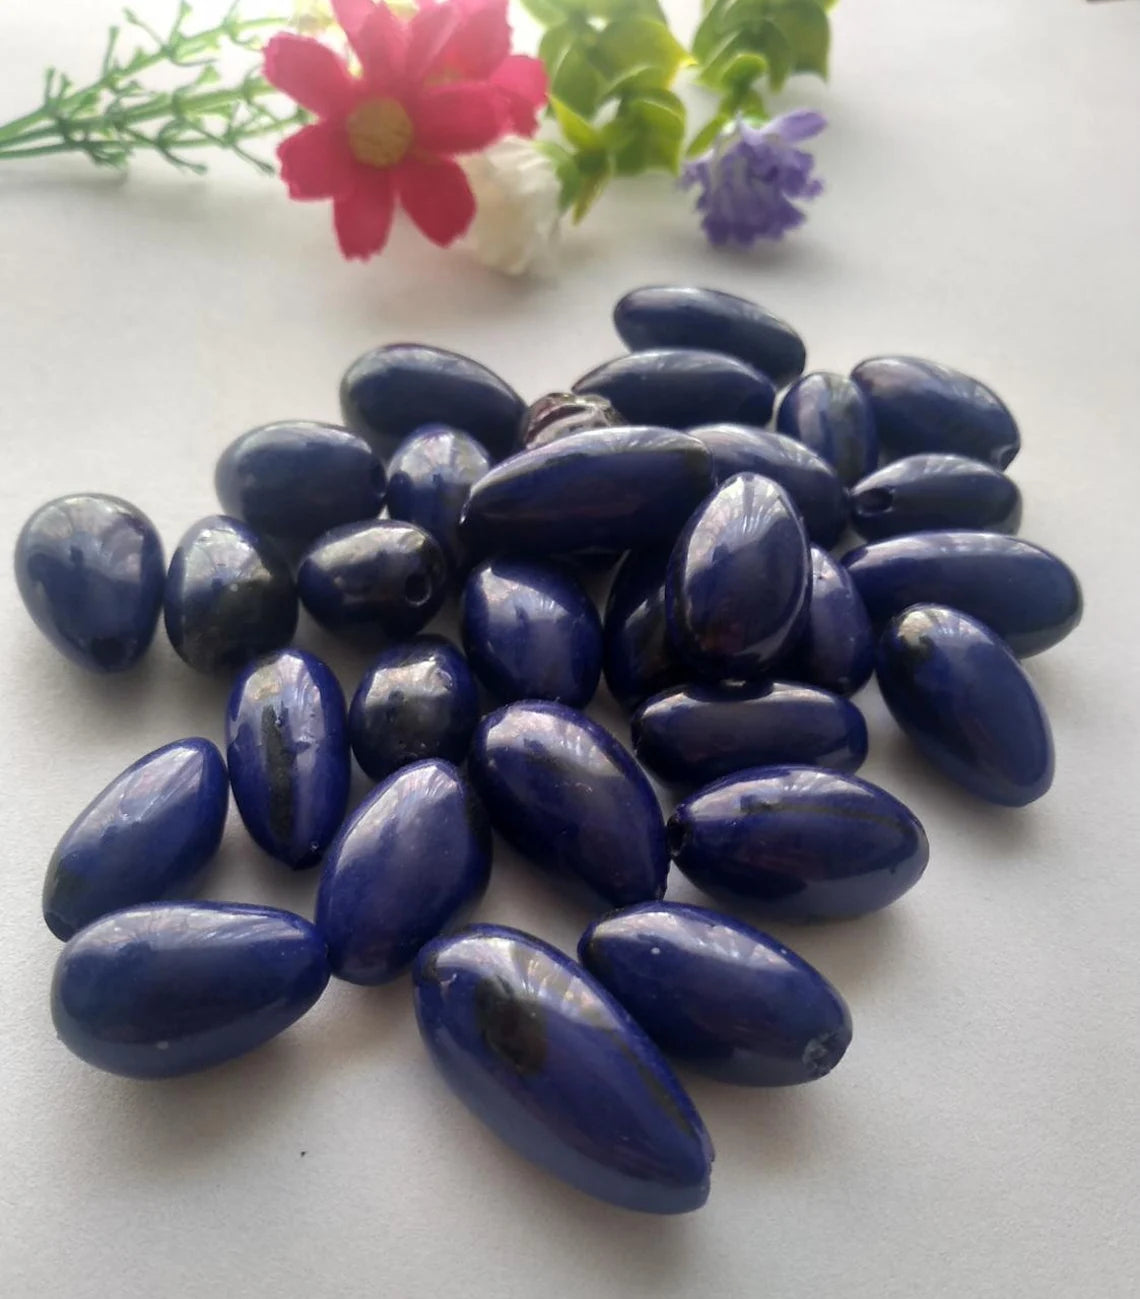 Camajuro Beads. 30 Dark Blue Pieces.